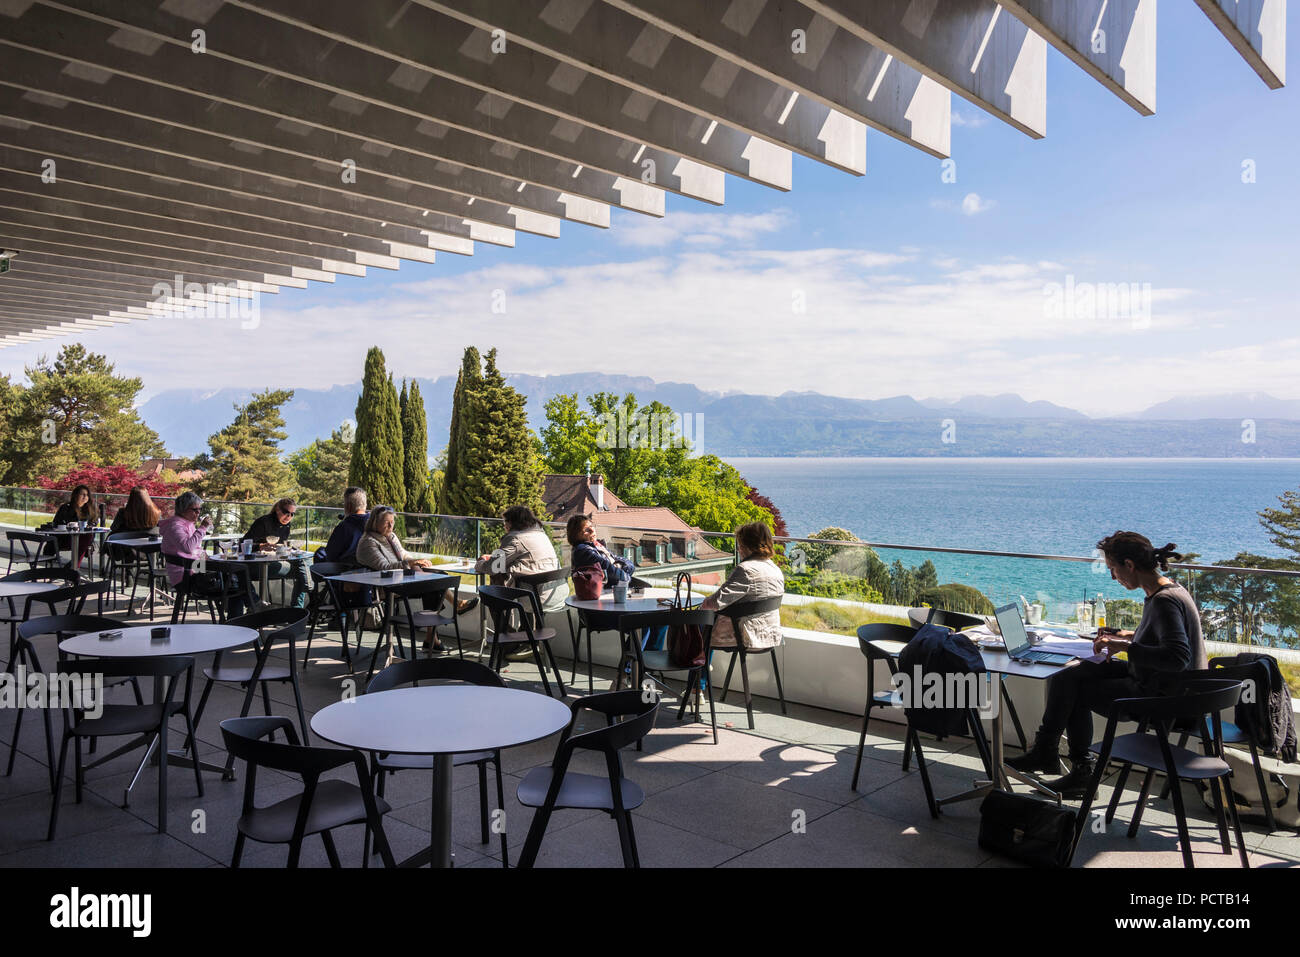 Cafe im Olympischen Museum "Le Musée Olympique" mit Blick auf den Genfer  See, Quai d'Ouchy, Lausanne, Kanton Waadt, West Switzerland, Schweiz  Stockfotografie - Alamy